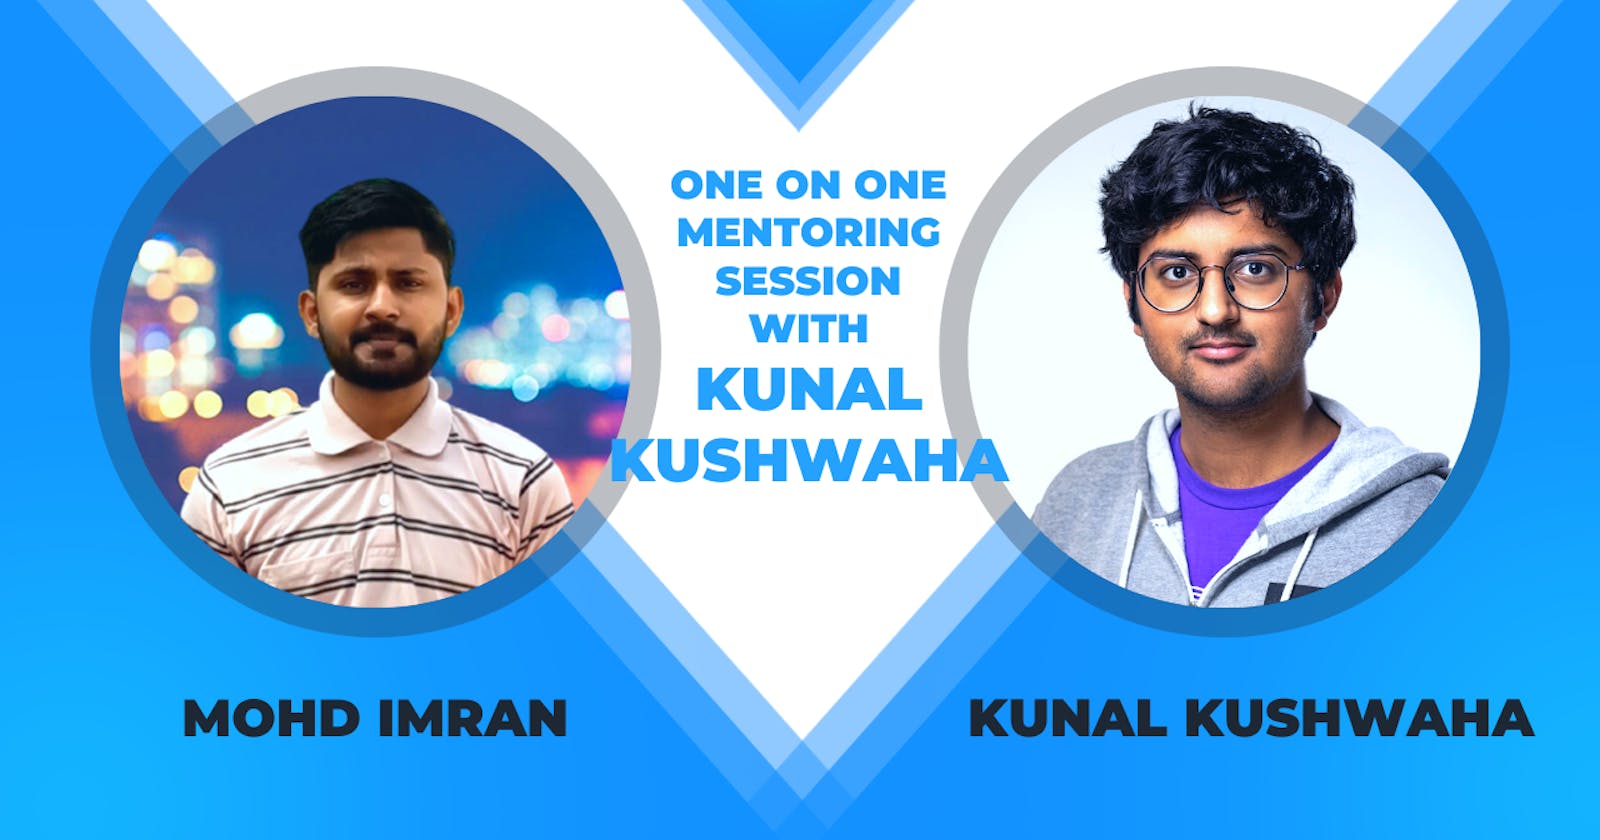 One on One mentoring session with Kunal Kushwaha